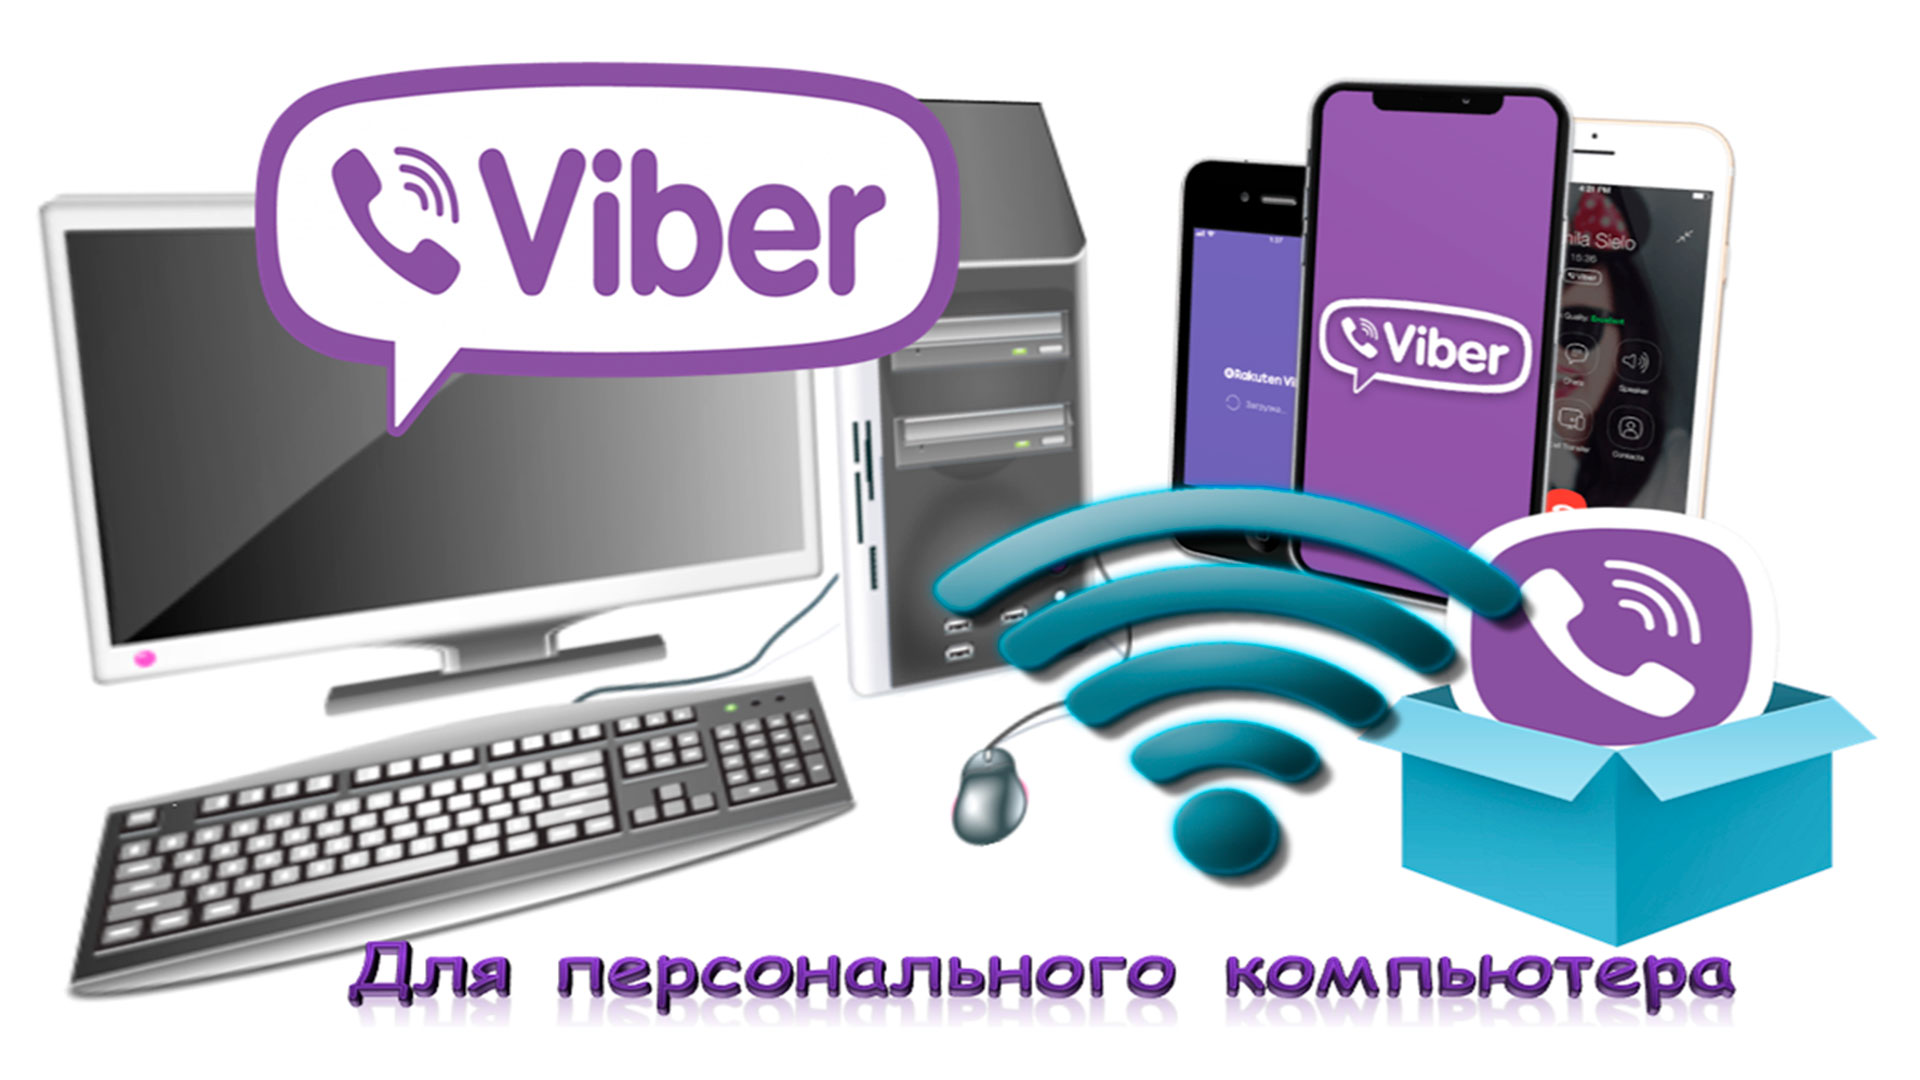 Изображение компьютера, смартфонов и логотипа Viber.